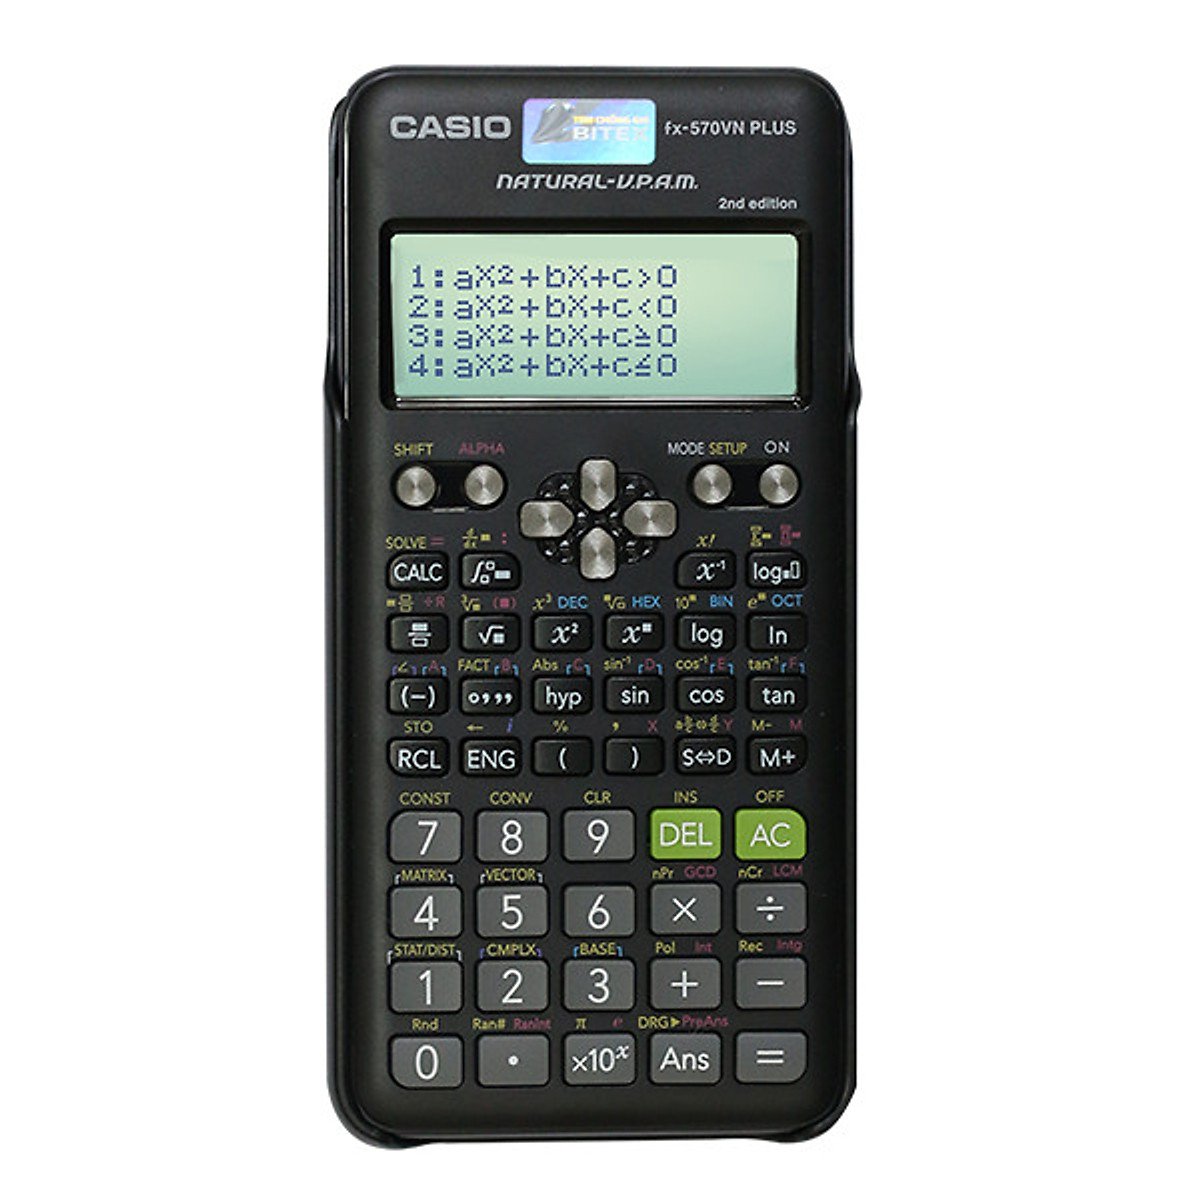 Máy tính Casio Fx-570VN Plus là một trong những công cụ tốt nhất để giải quyết bất kỳ bài toán nào. Với thiết kế toán học chuyên nghiệp, máy tính này giúp bạn trở nên hiệu quả hơn trong việc giải quyết các bài tập. Hãy xem hình ảnh để tìm hiểu thêm về những tính năng tuyệt vời của máy tính Casio Fx-570VN Plus.